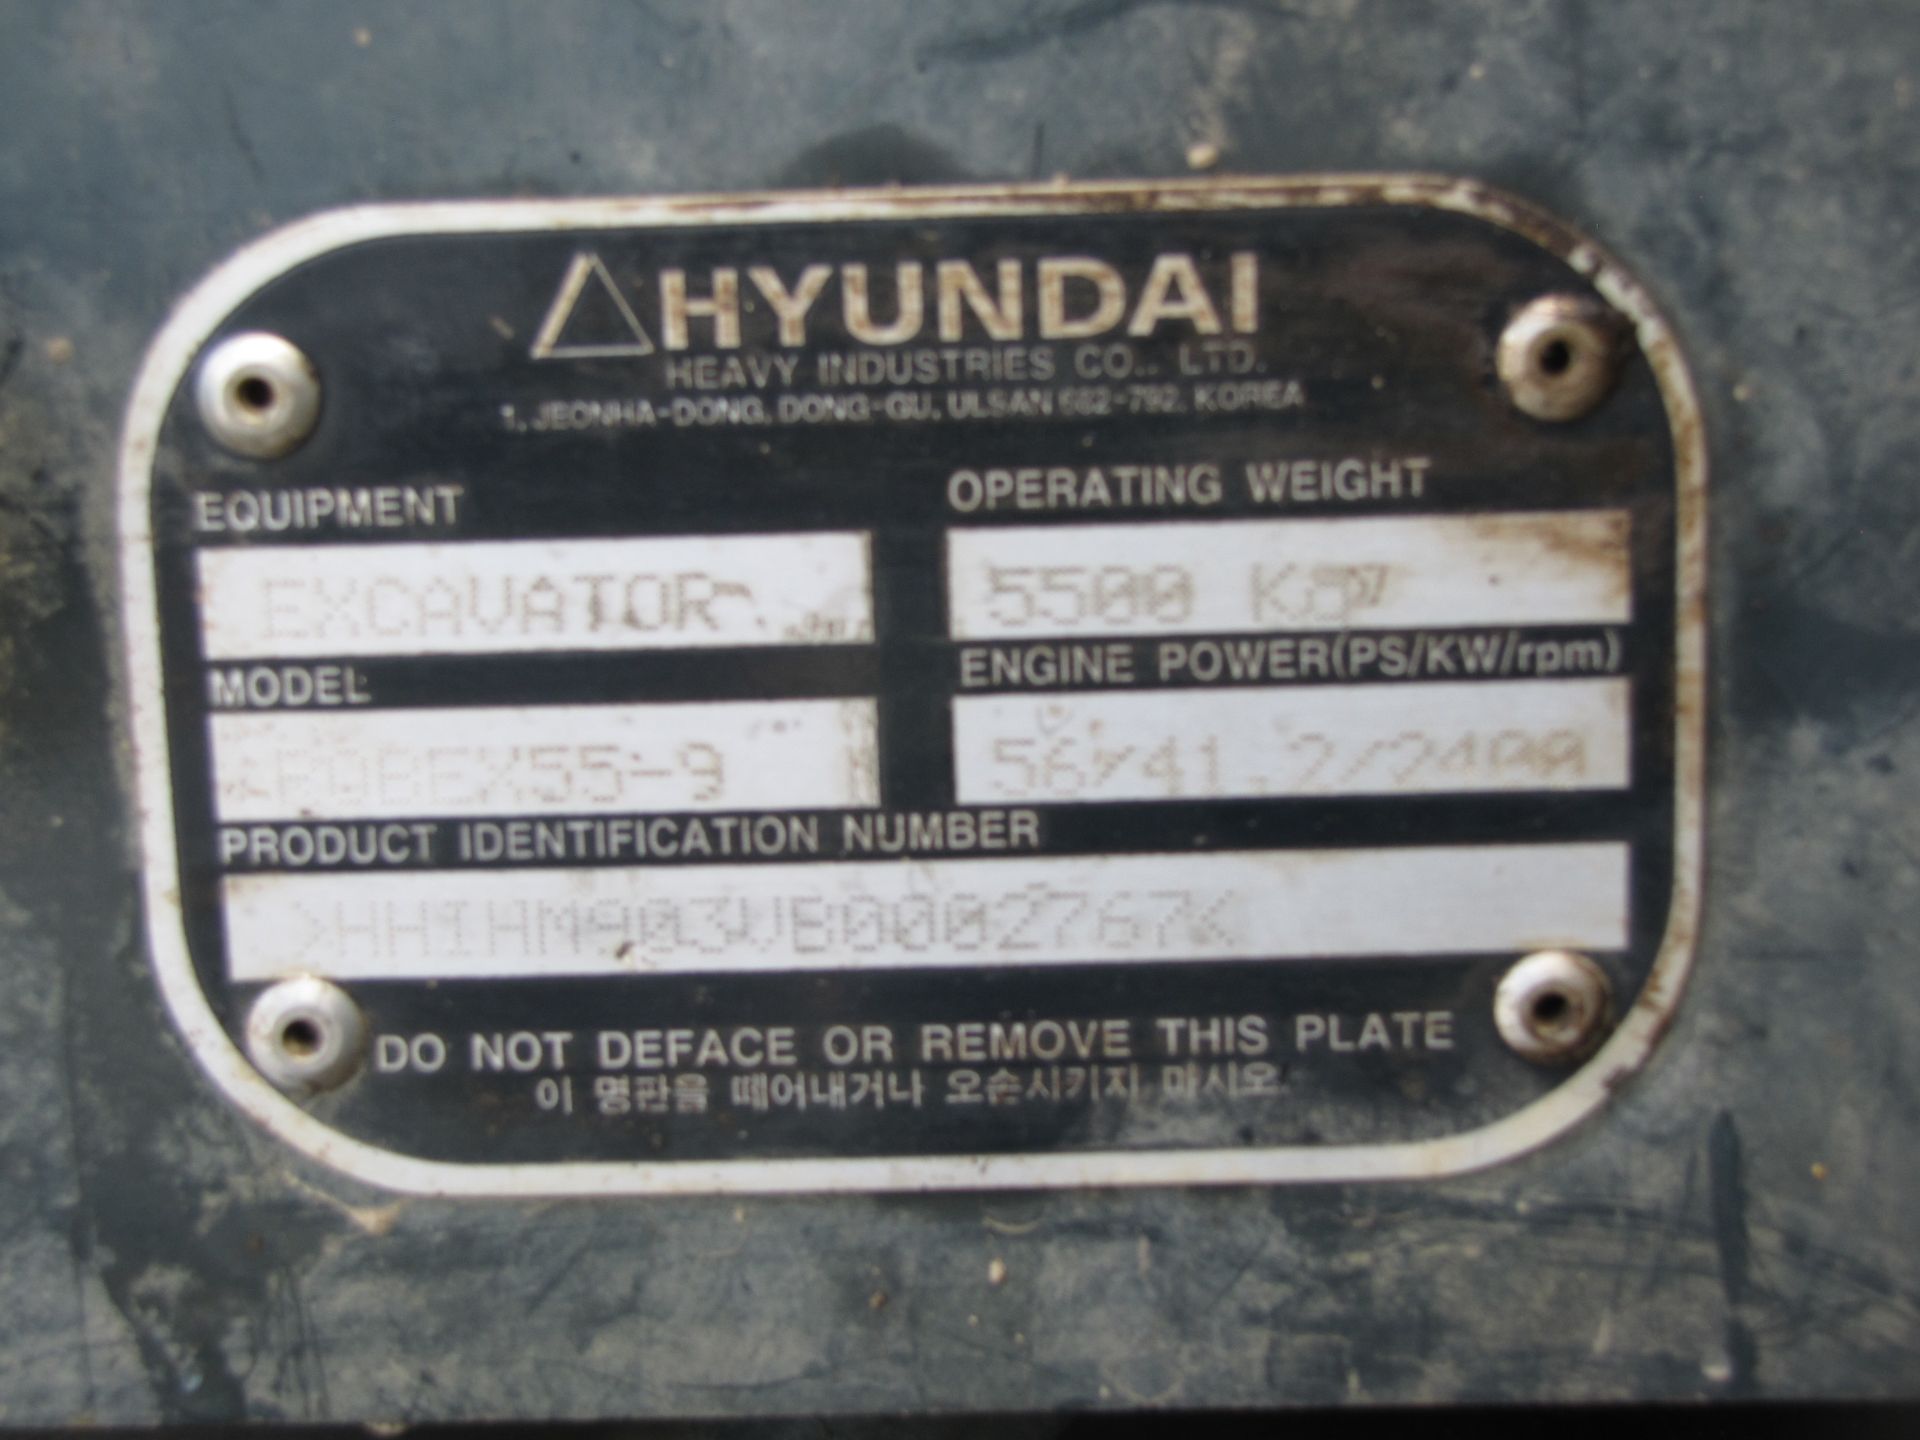 Hyundai 55-9 mini excavator - Image 30 of 42